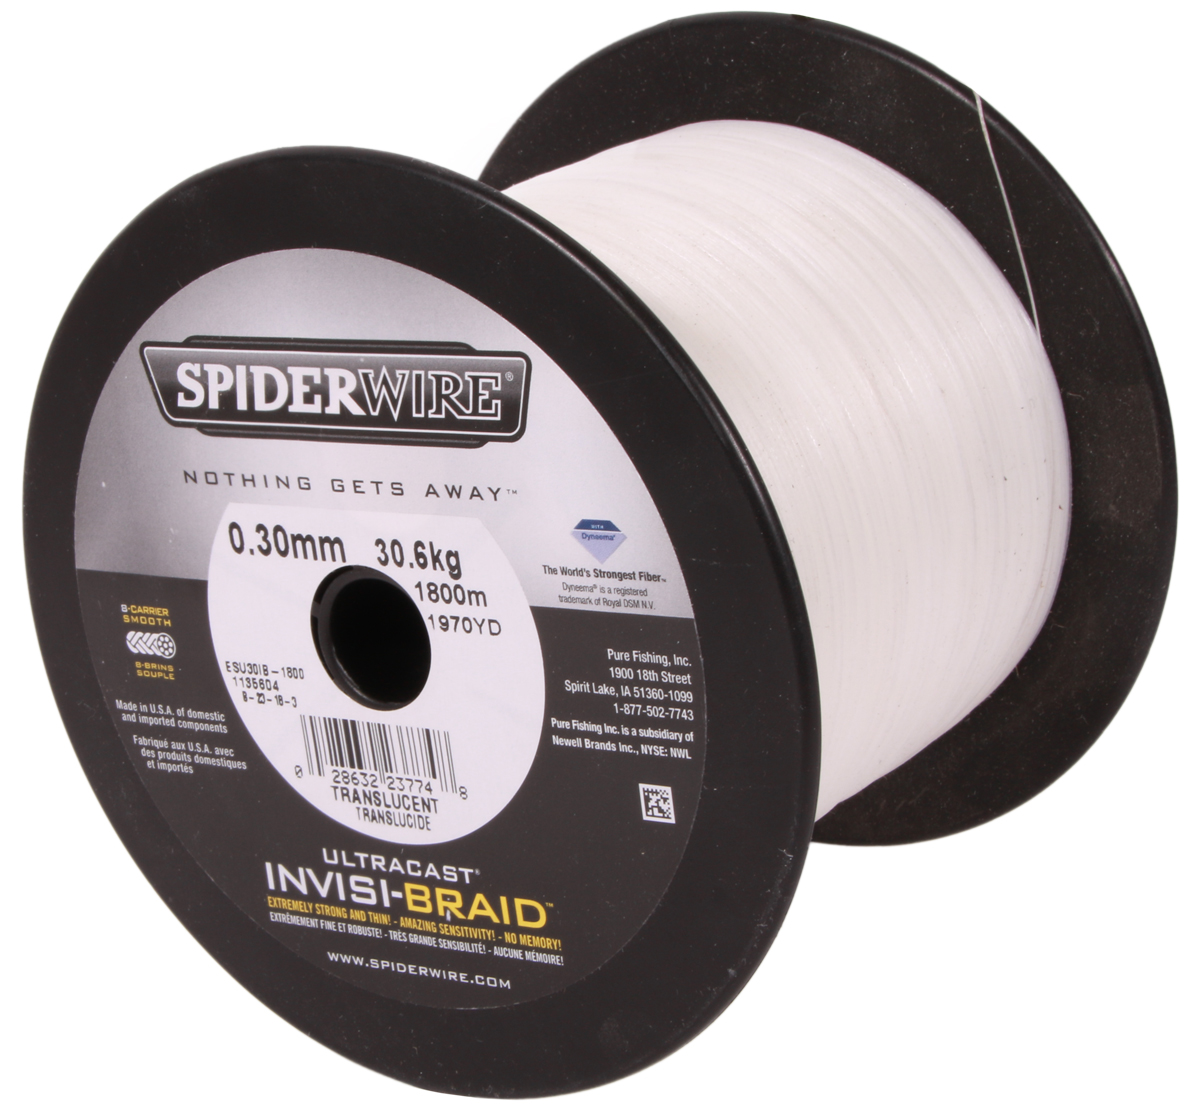 Spiderwire Invisi-Braid Translucent 0,30mm (1800m)